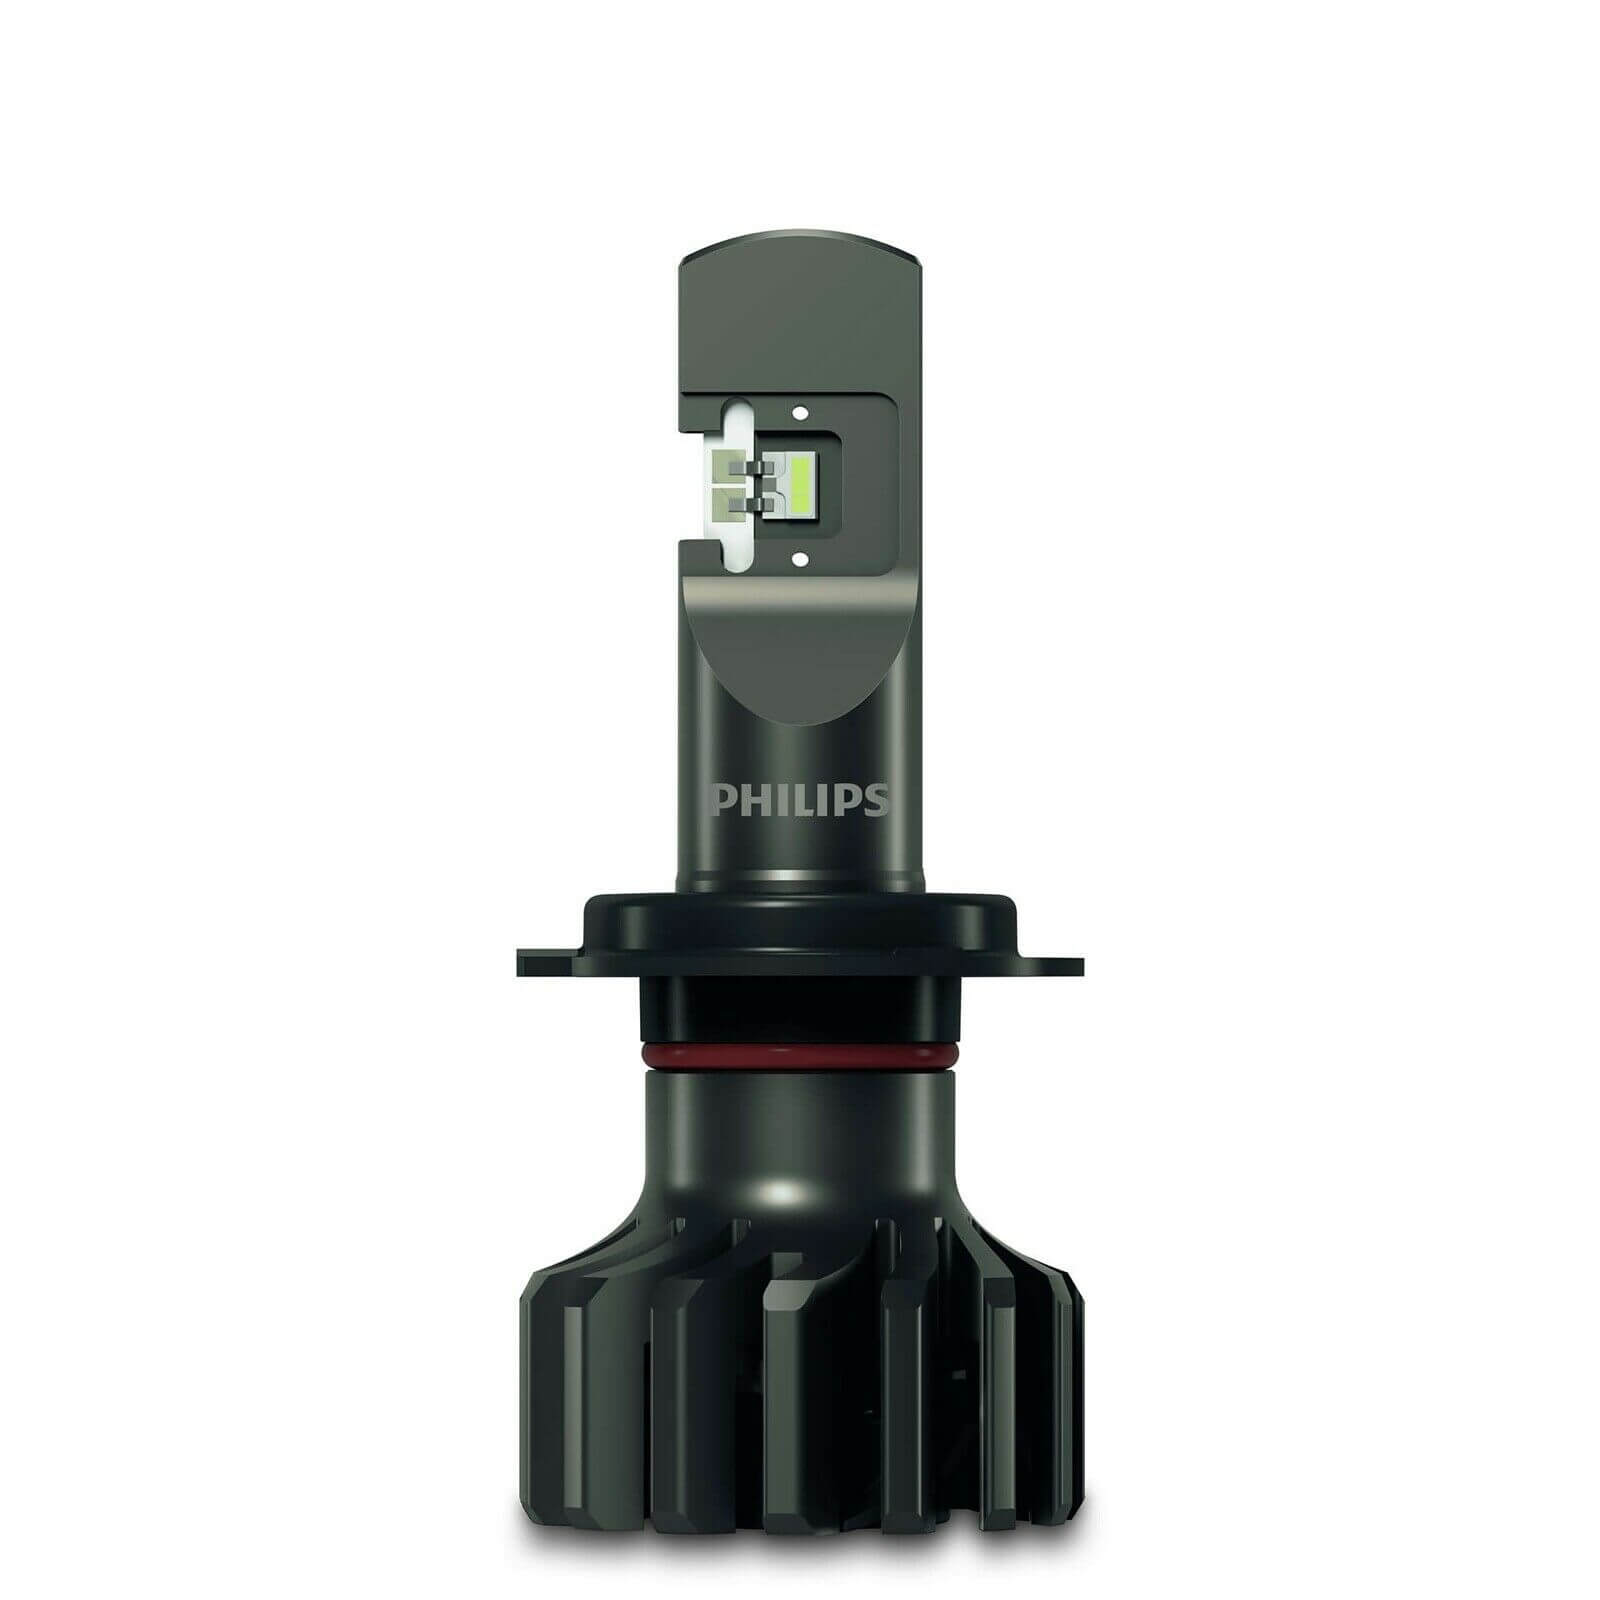 Bóng đèn pha LED Philips HB3/4 Pro 9000 LED 11005 U90 CW X2 tăng sáng 250% cho xe hơi xe ô tô